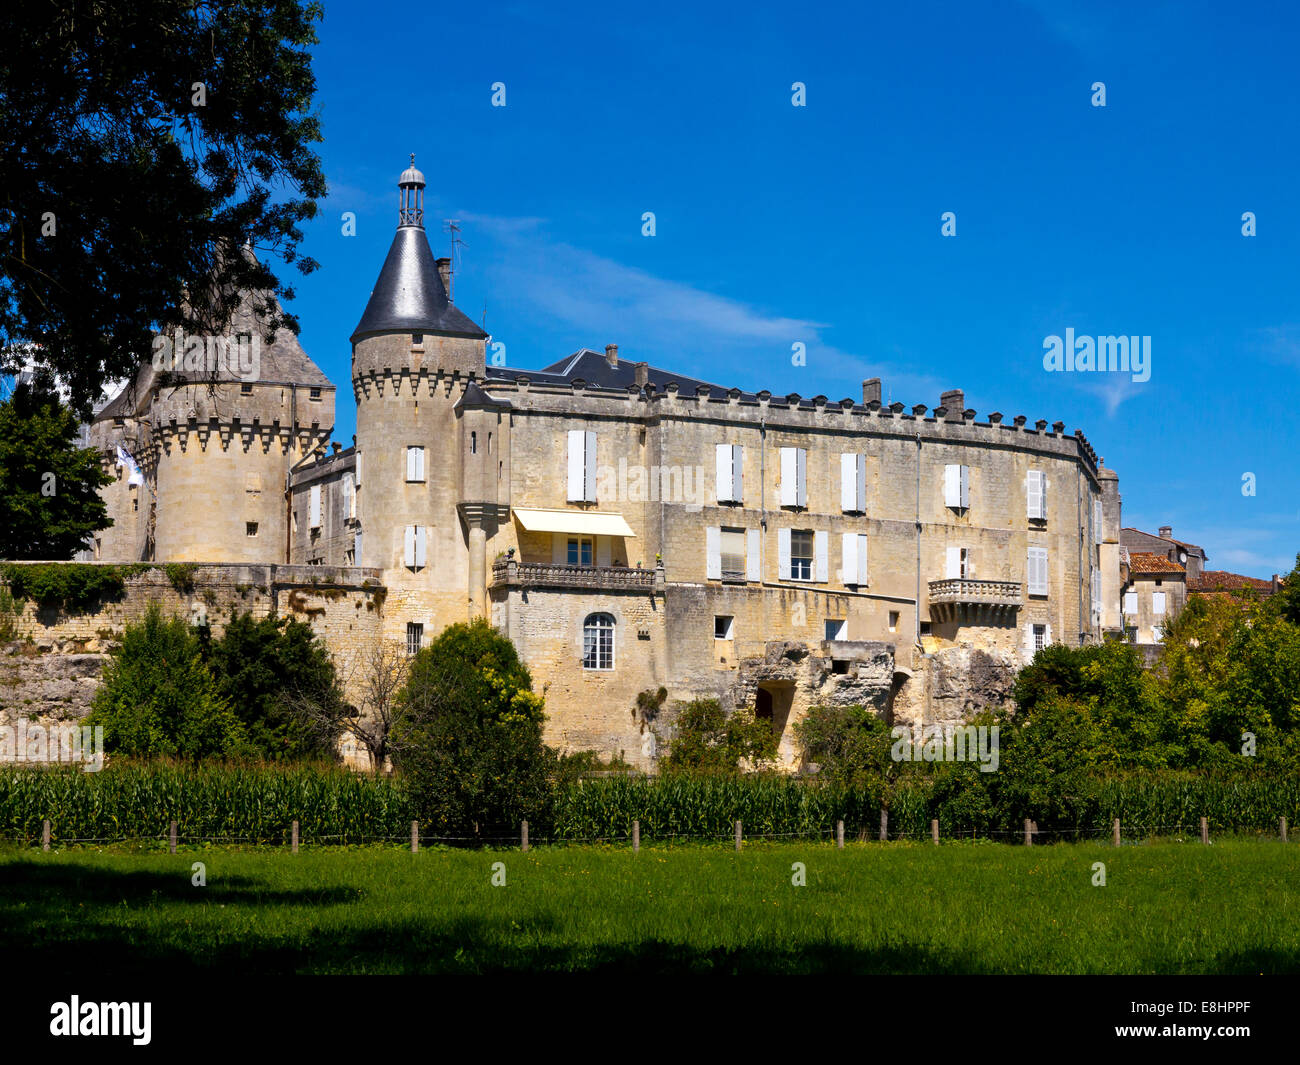 Le château du xve siècle à Jonzac, en Charente-Maritime du sud-ouest de la France Banque D'Images